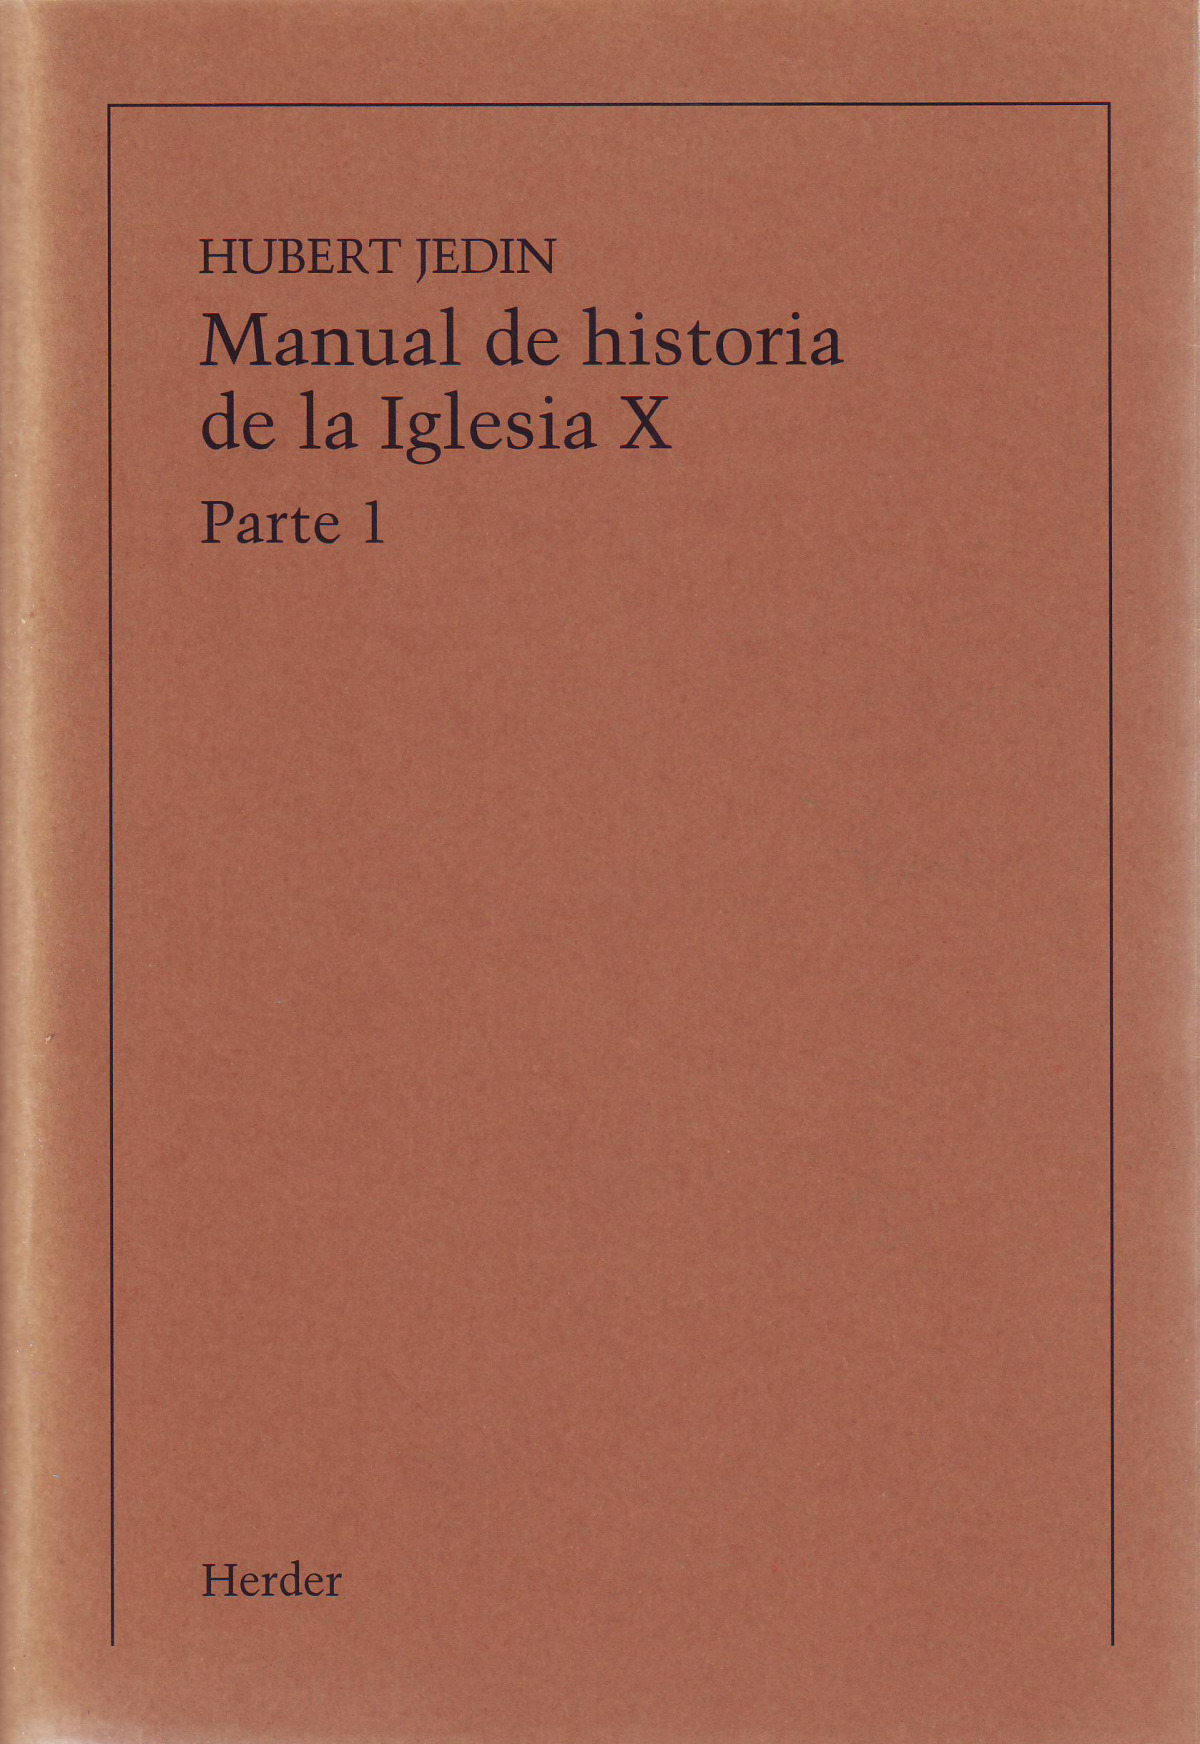 Manual de historia de la iglesia x - Aldea, Quintin / Bidegain, Ana Maria / C